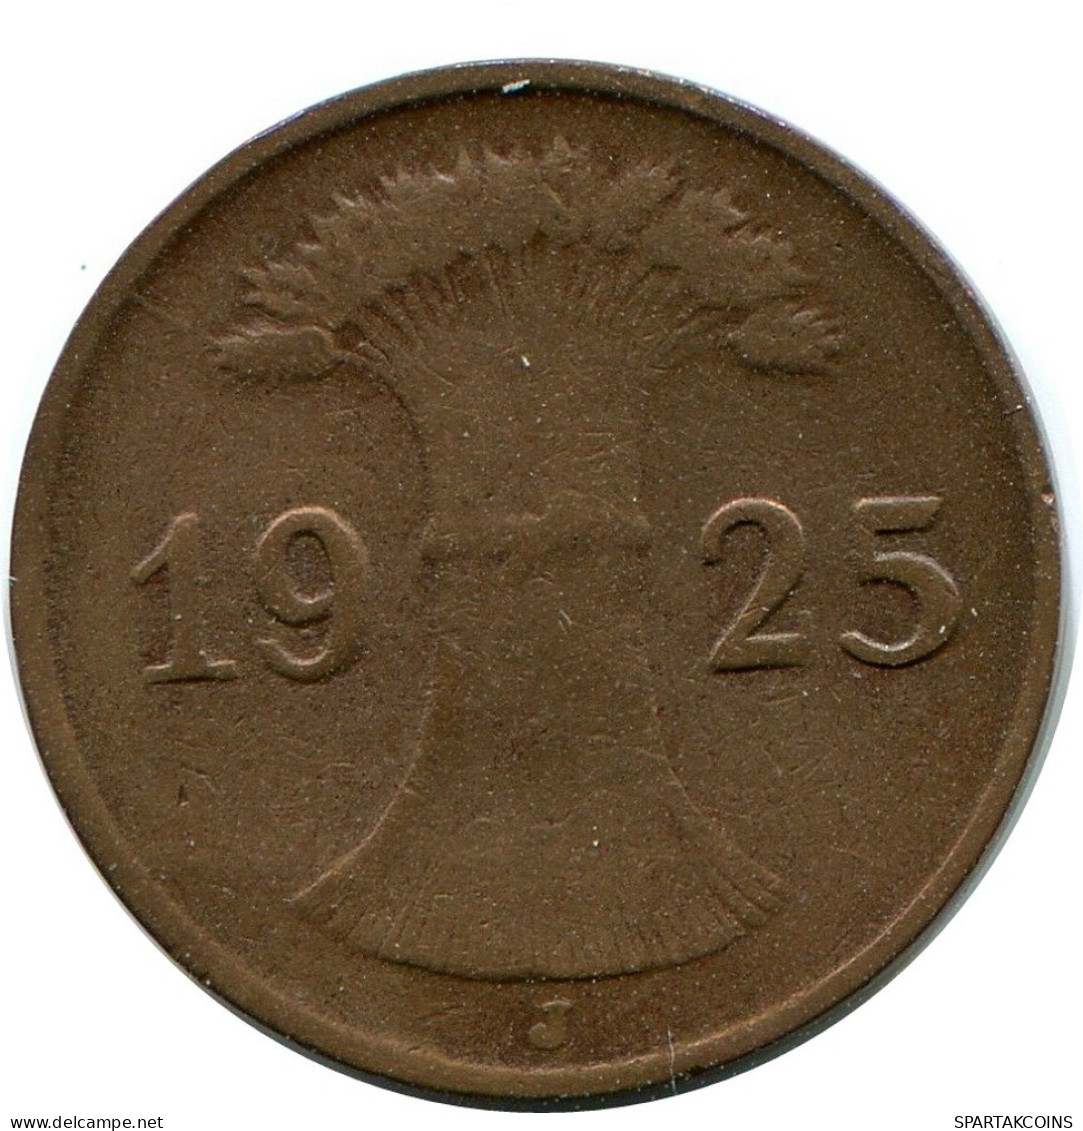 1 REICHSPFENNIG 1925 J ALLEMAGNE Pièce GERMANY #DB777.F.A - 1 Rentenpfennig & 1 Reichspfennig